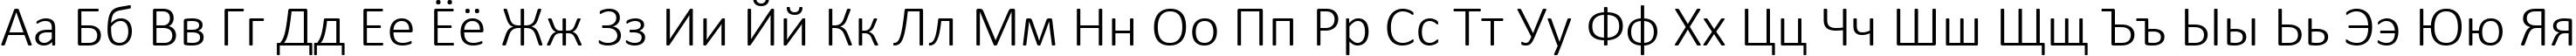 Пример написания русского алфавита шрифтом Calibri Light